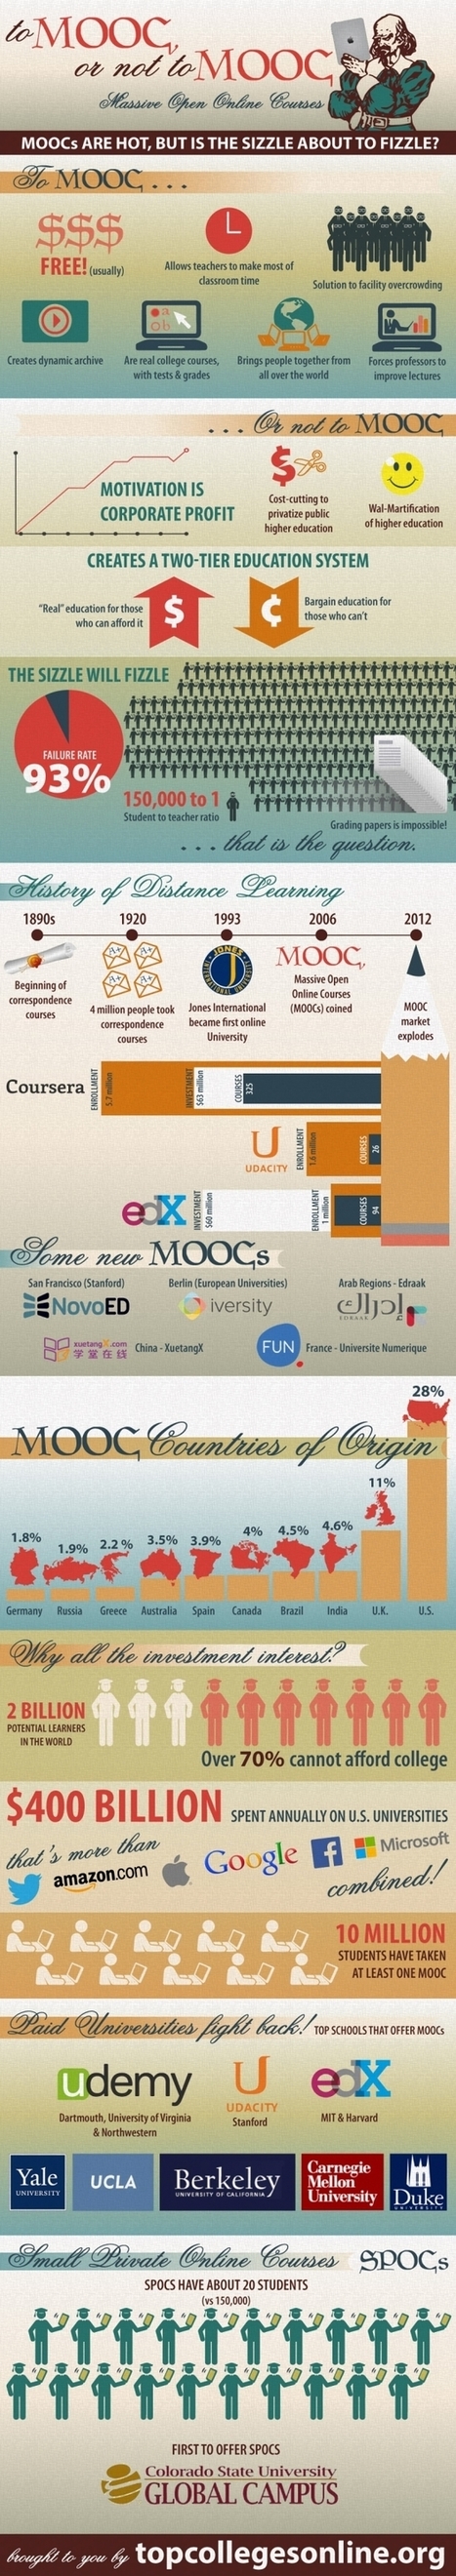 Are MOOCs Still Going Strong? | iSchoolLeader Magazine | Scoop.it